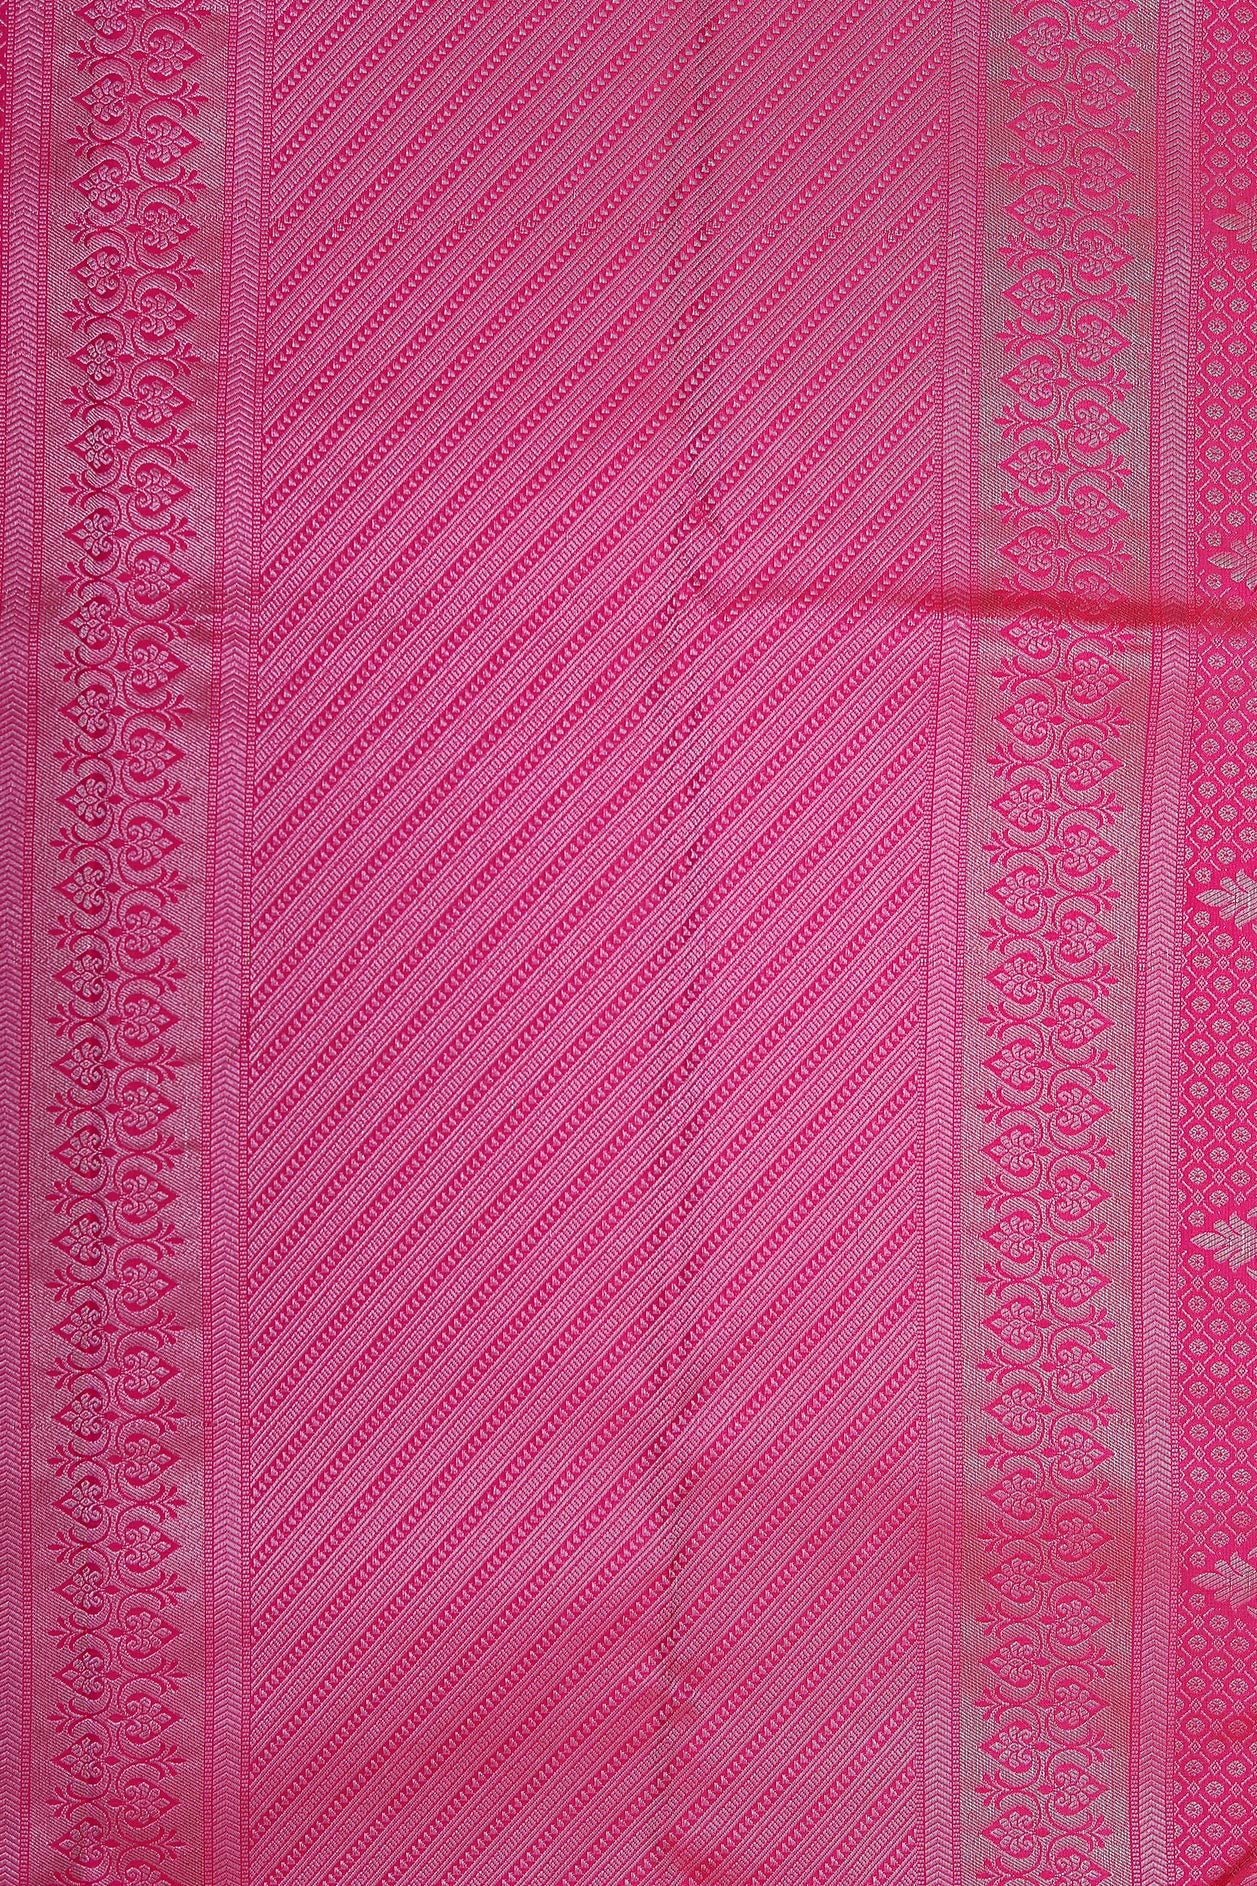 Big Silver Zari Border With Brocade Bindi Buttis Hot Pink Kanchipuram Silk Saree